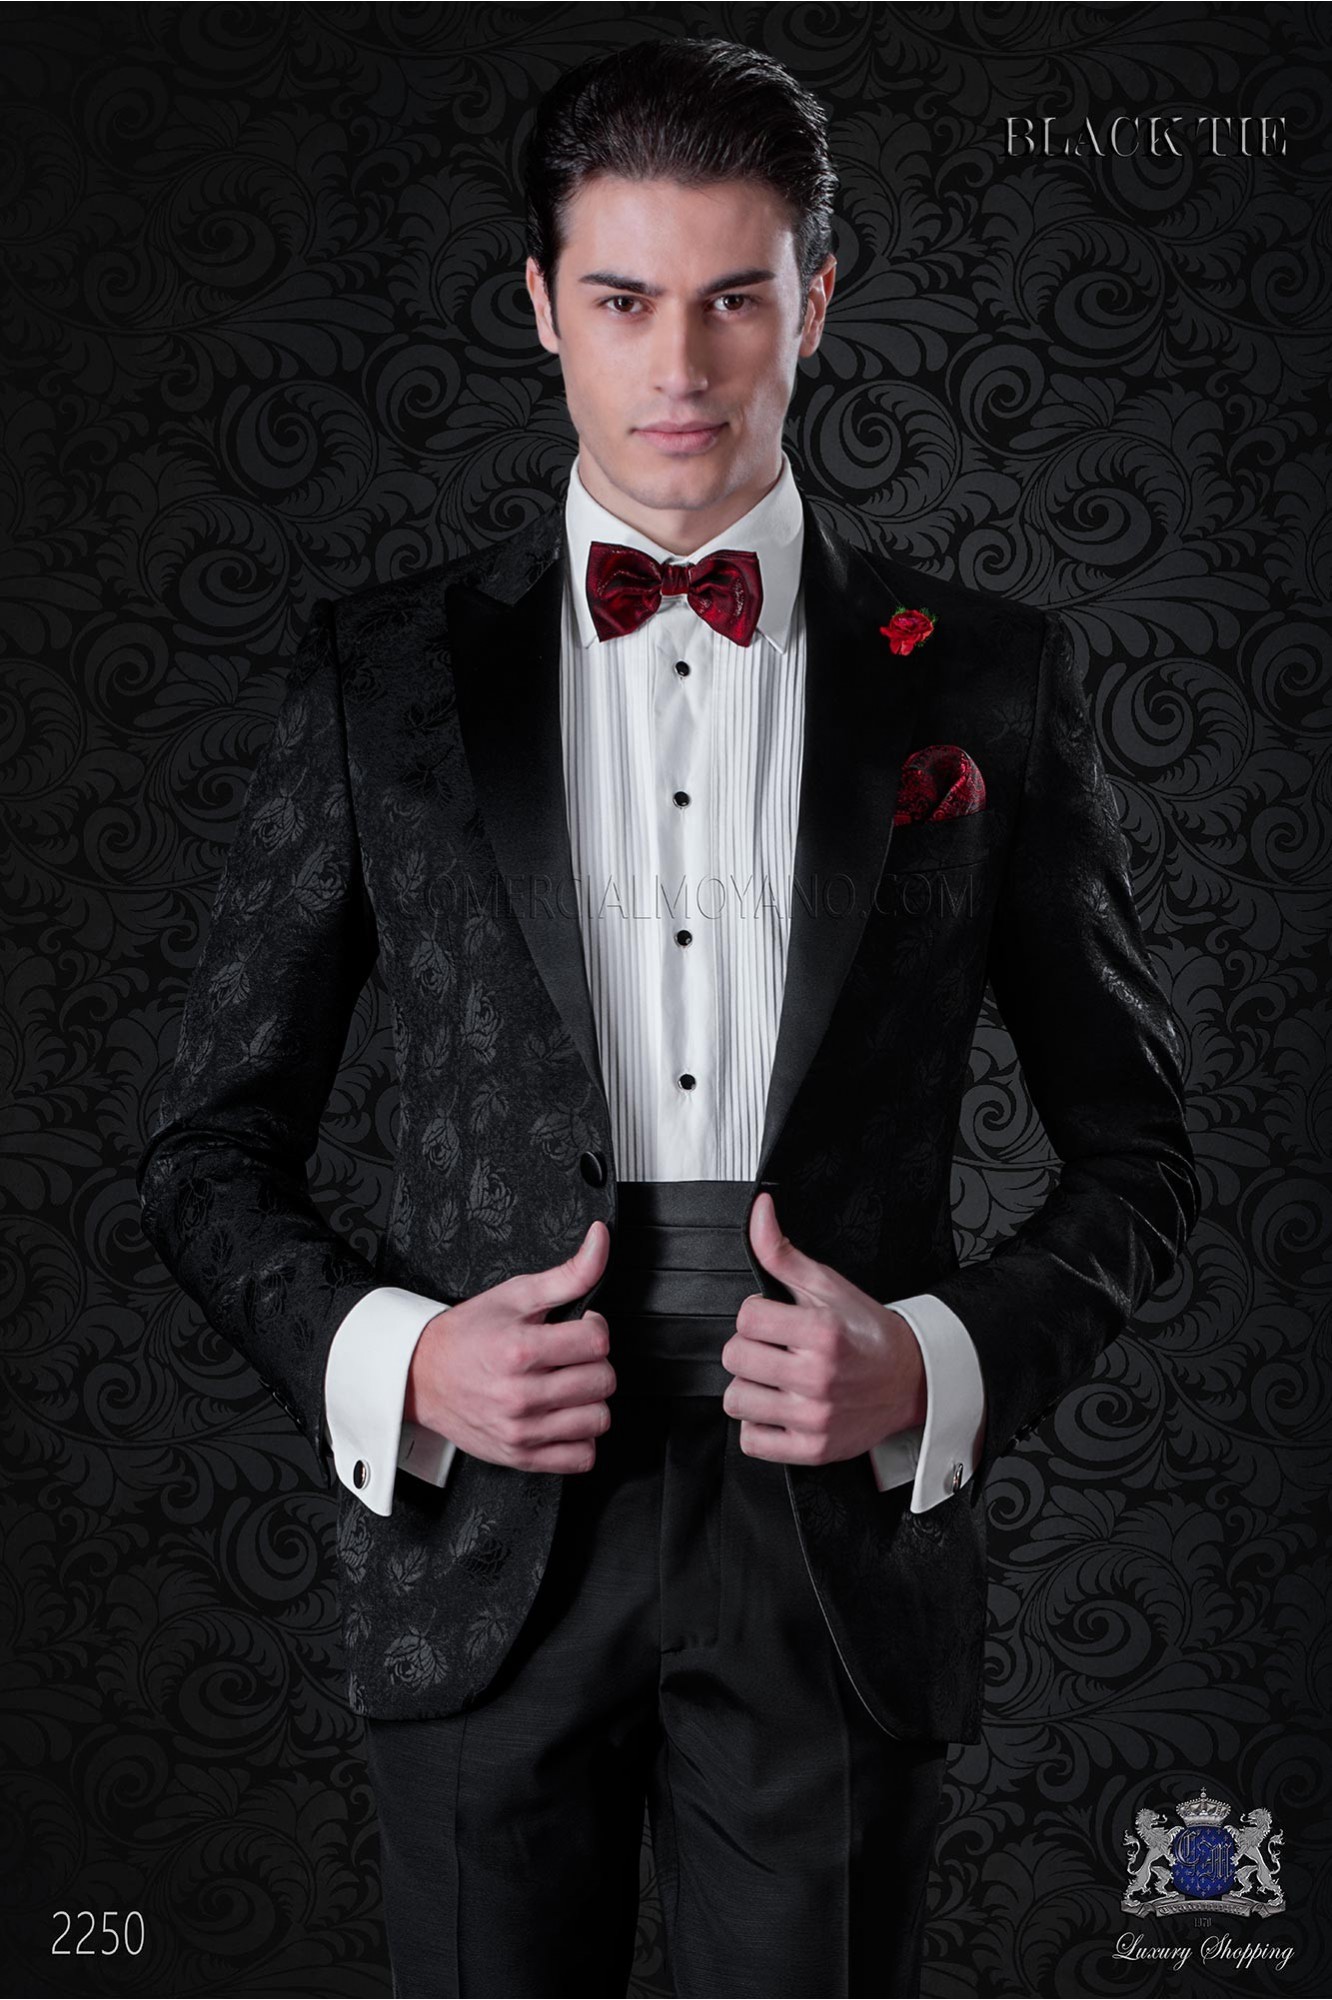 Esmoquin negro en jacquard mixto seda modelo: 2250 Mario Moyano colección Black Tie